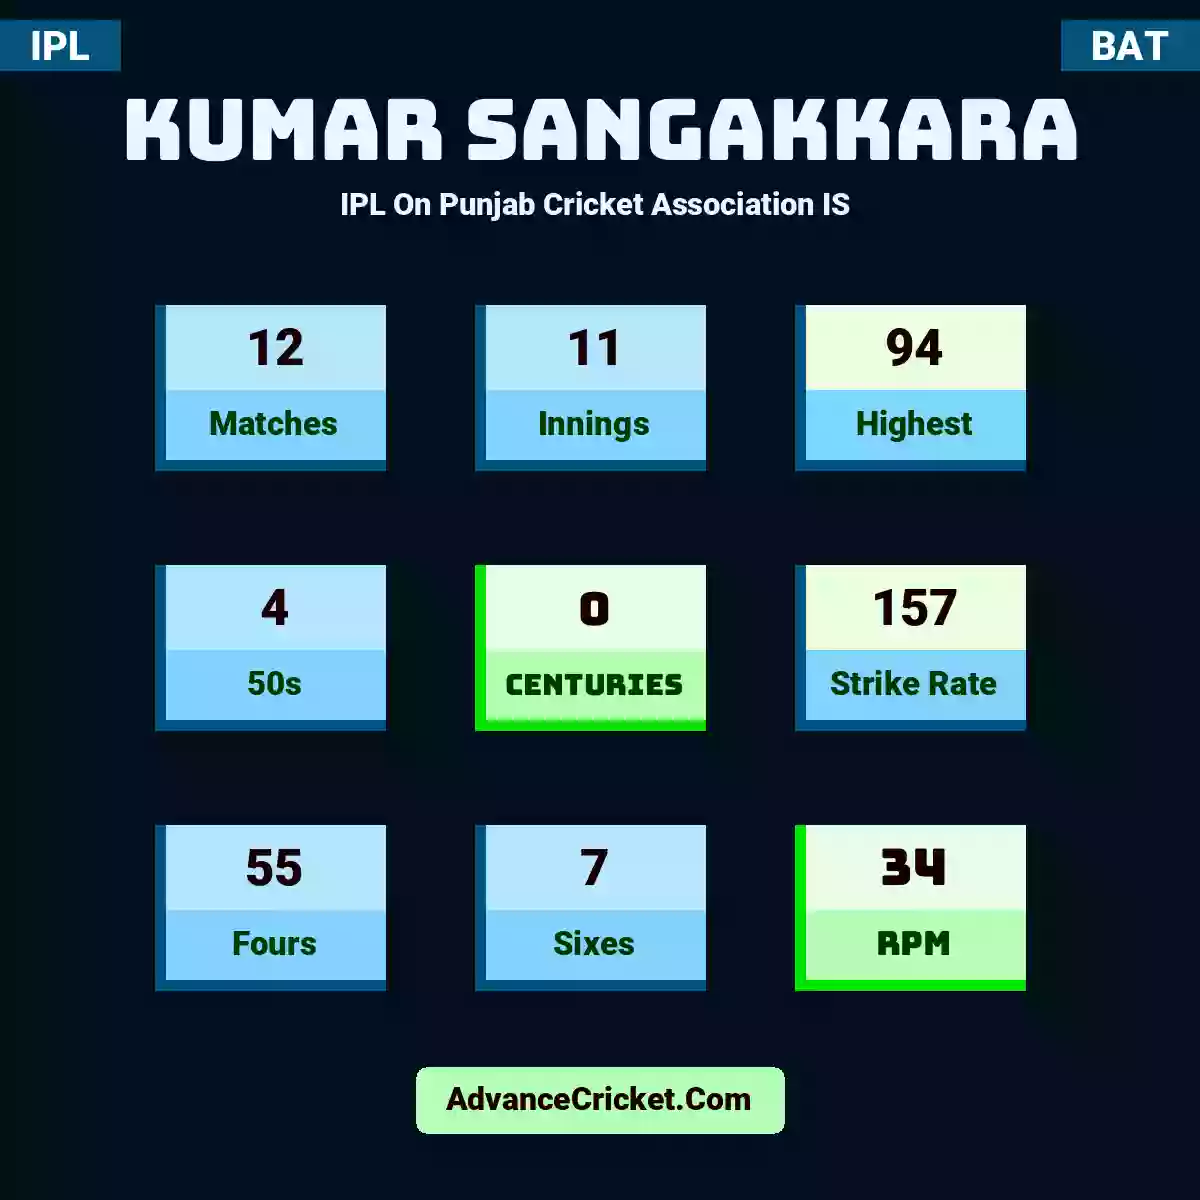 Kumar Sangakkara IPL  On Punjab Cricket Association IS , Kumar Sangakkara played 12 matches, scored 94 runs as highest, 4 half-centuries, and 0 centuries, with a strike rate of 157. K.Sangakkara hit 55 fours and 7 sixes, with an RPM of 34.